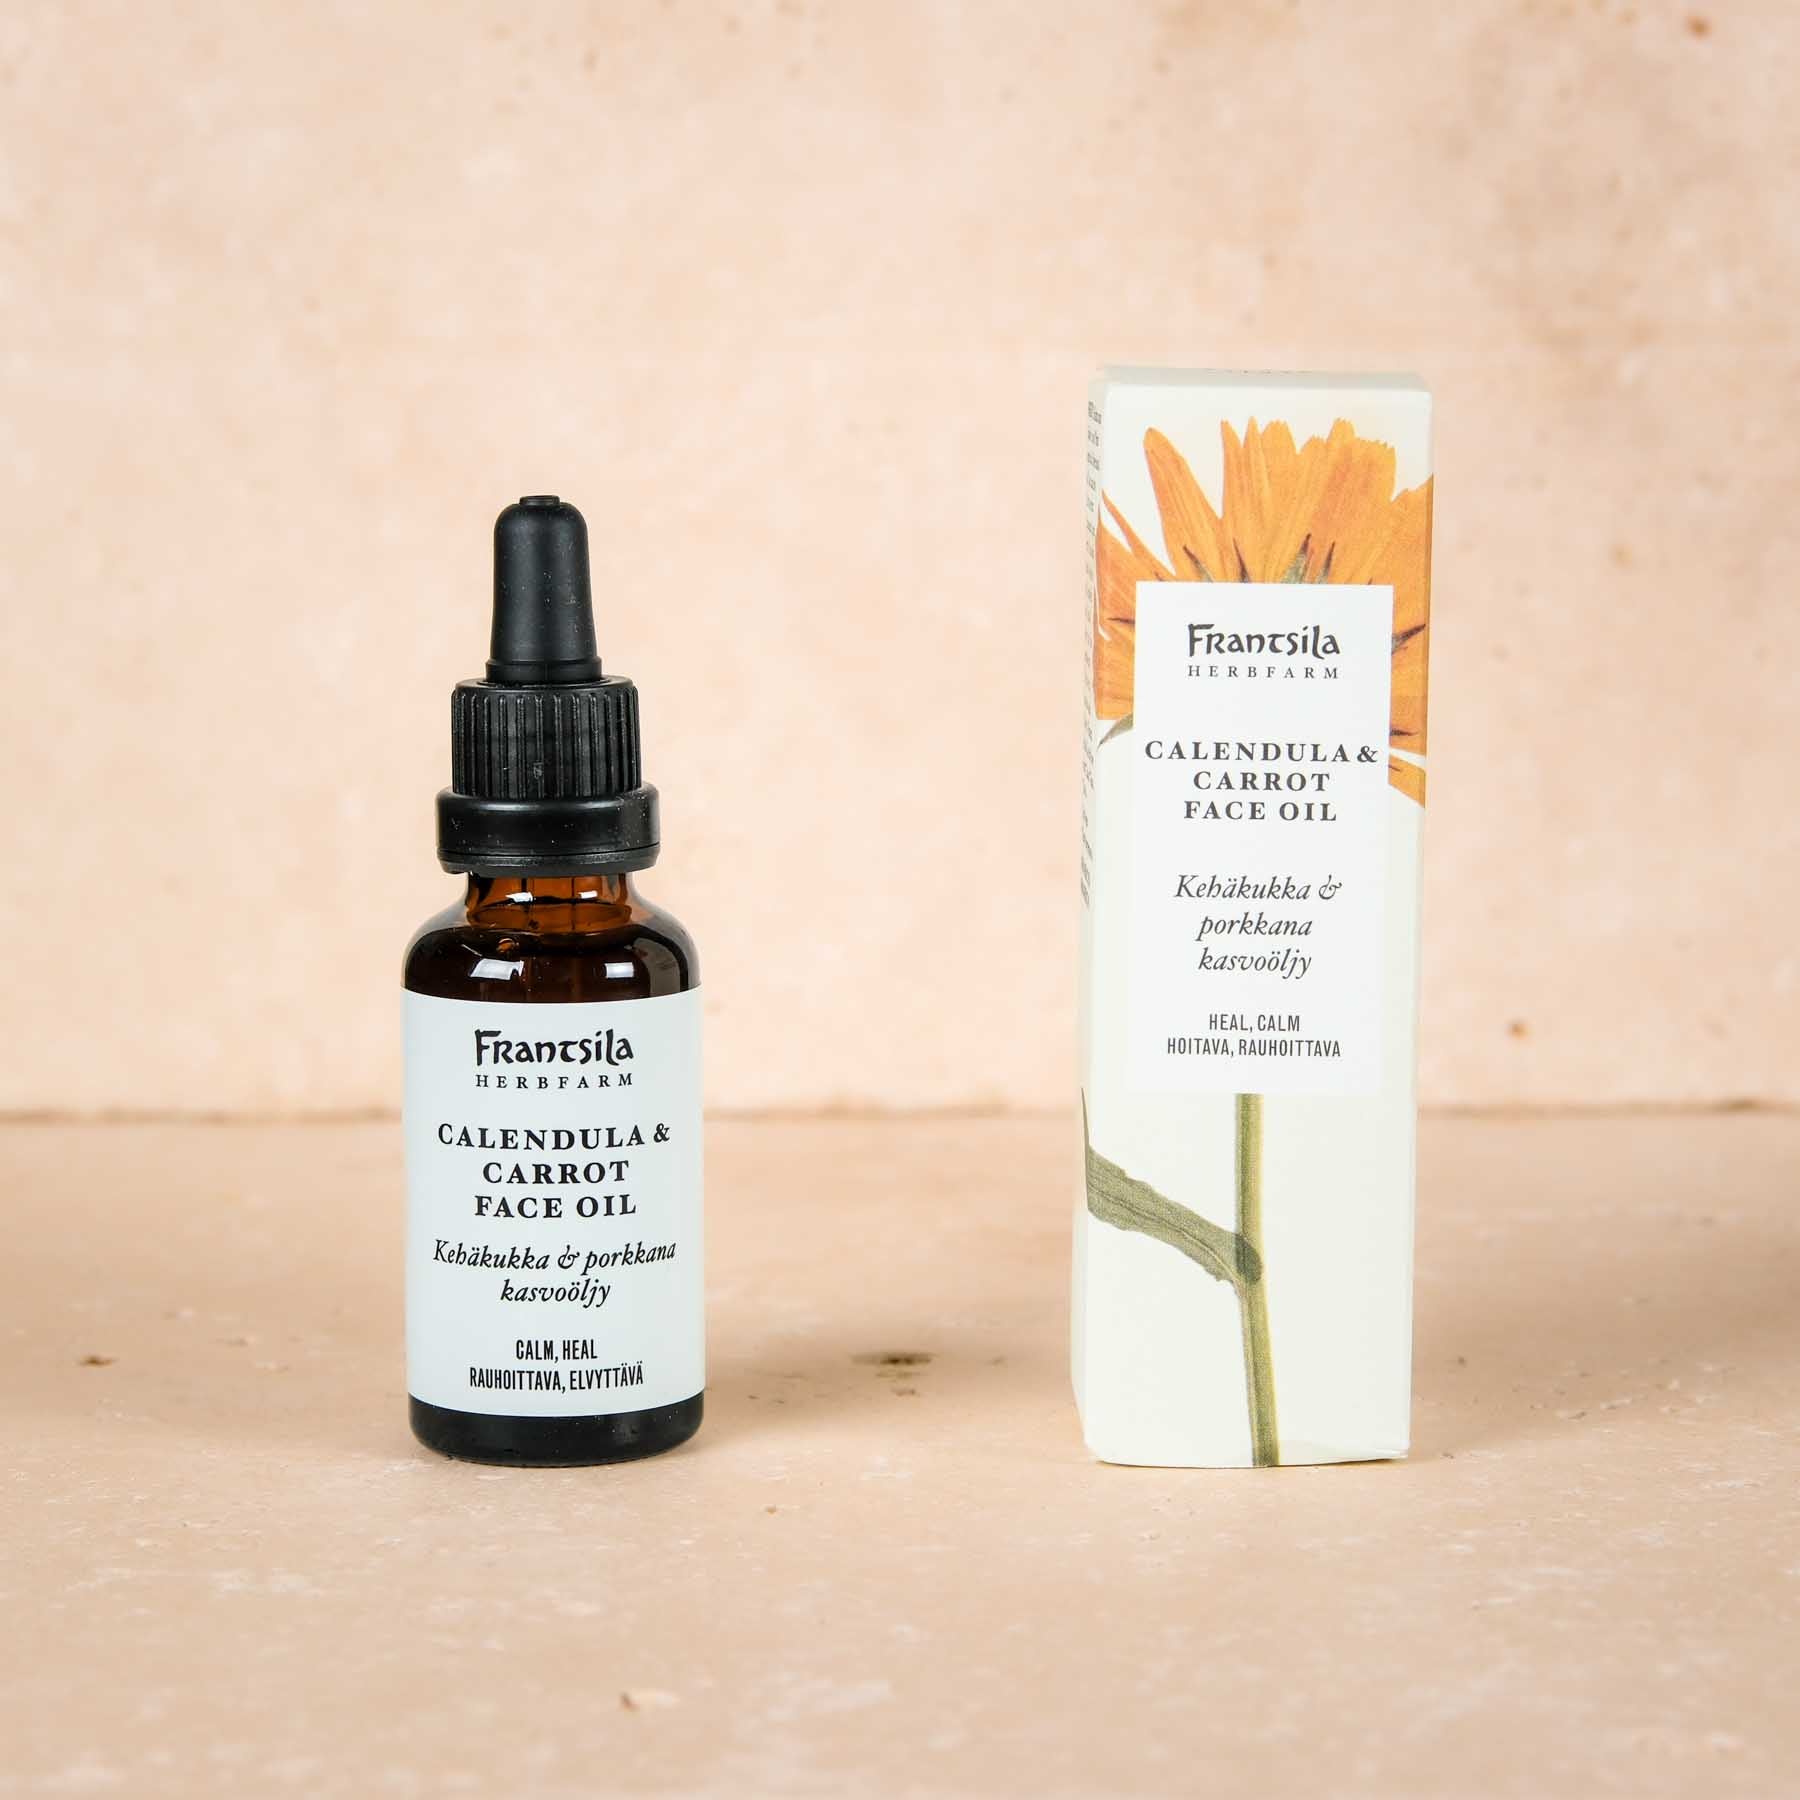 Verwöhnen Sie Ihre Haut mit dem Naturkosmetik Gesichtsöl Calendula (Ringelblume) & Karotte von Frantsila – beste Naturkosmetik aus Finnland.